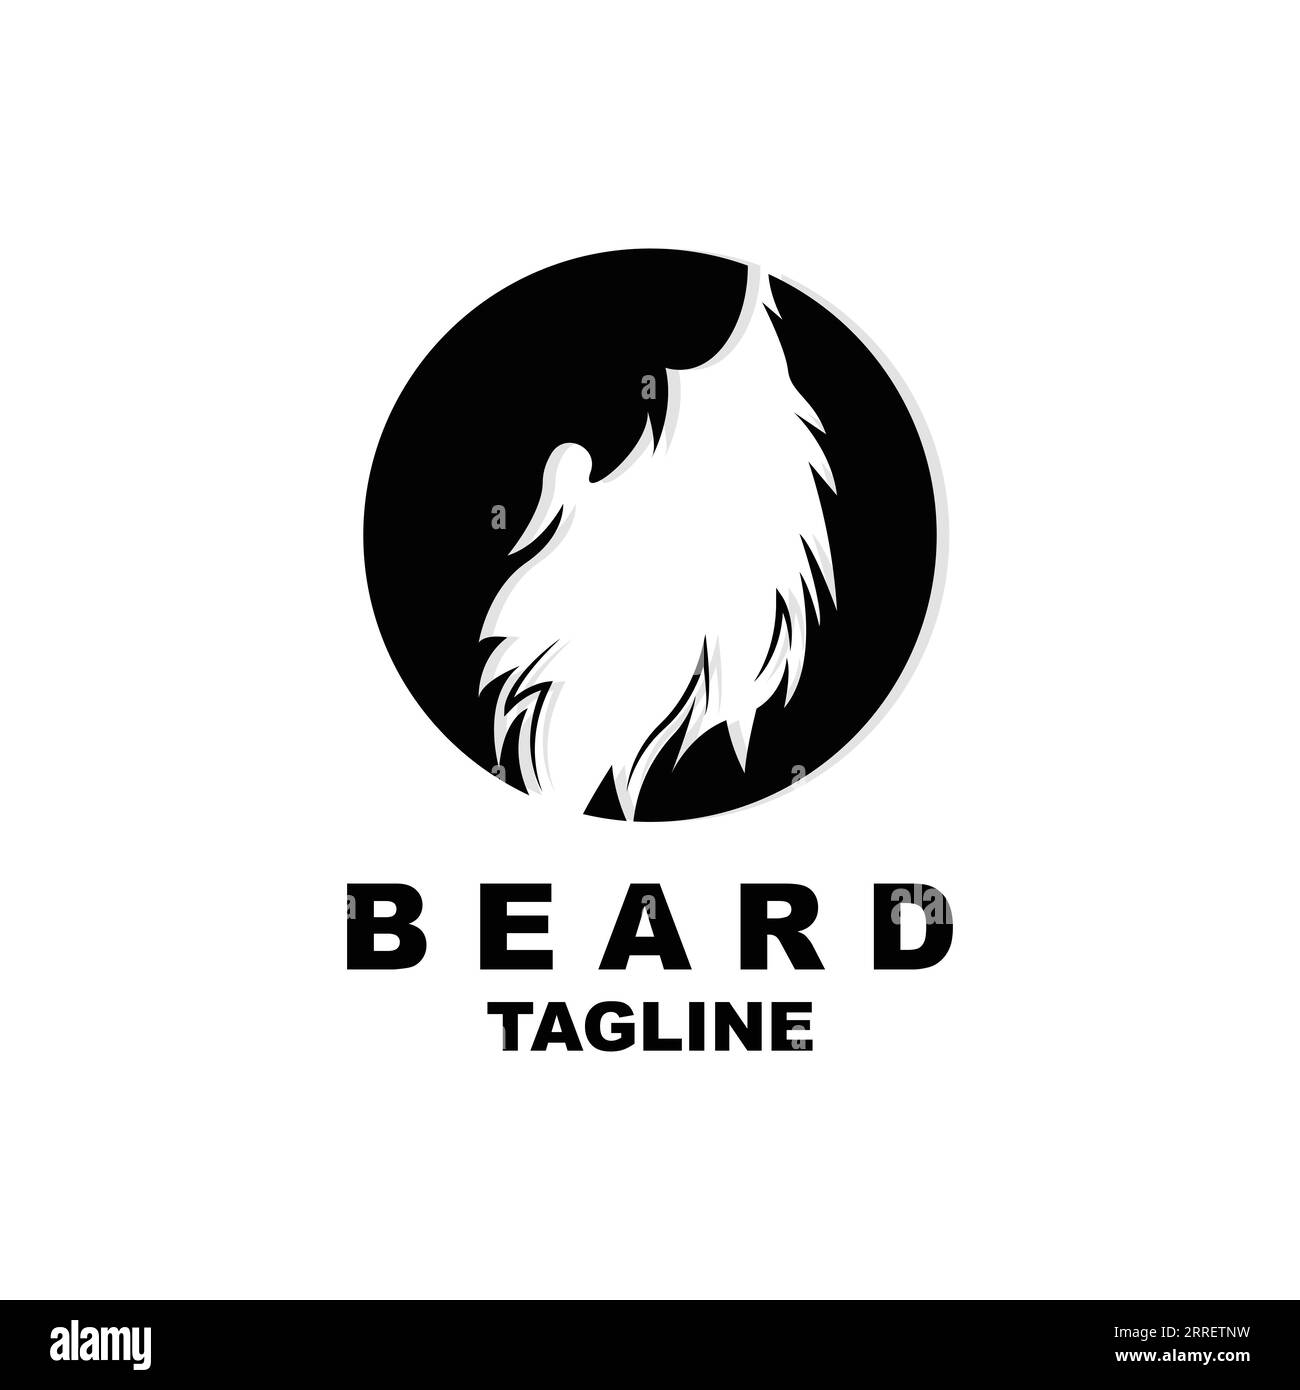 Conception de logo de barbe, vecteur de cheveux look masculin, conception de style Barbershop pour hommes Illustration de Vecteur